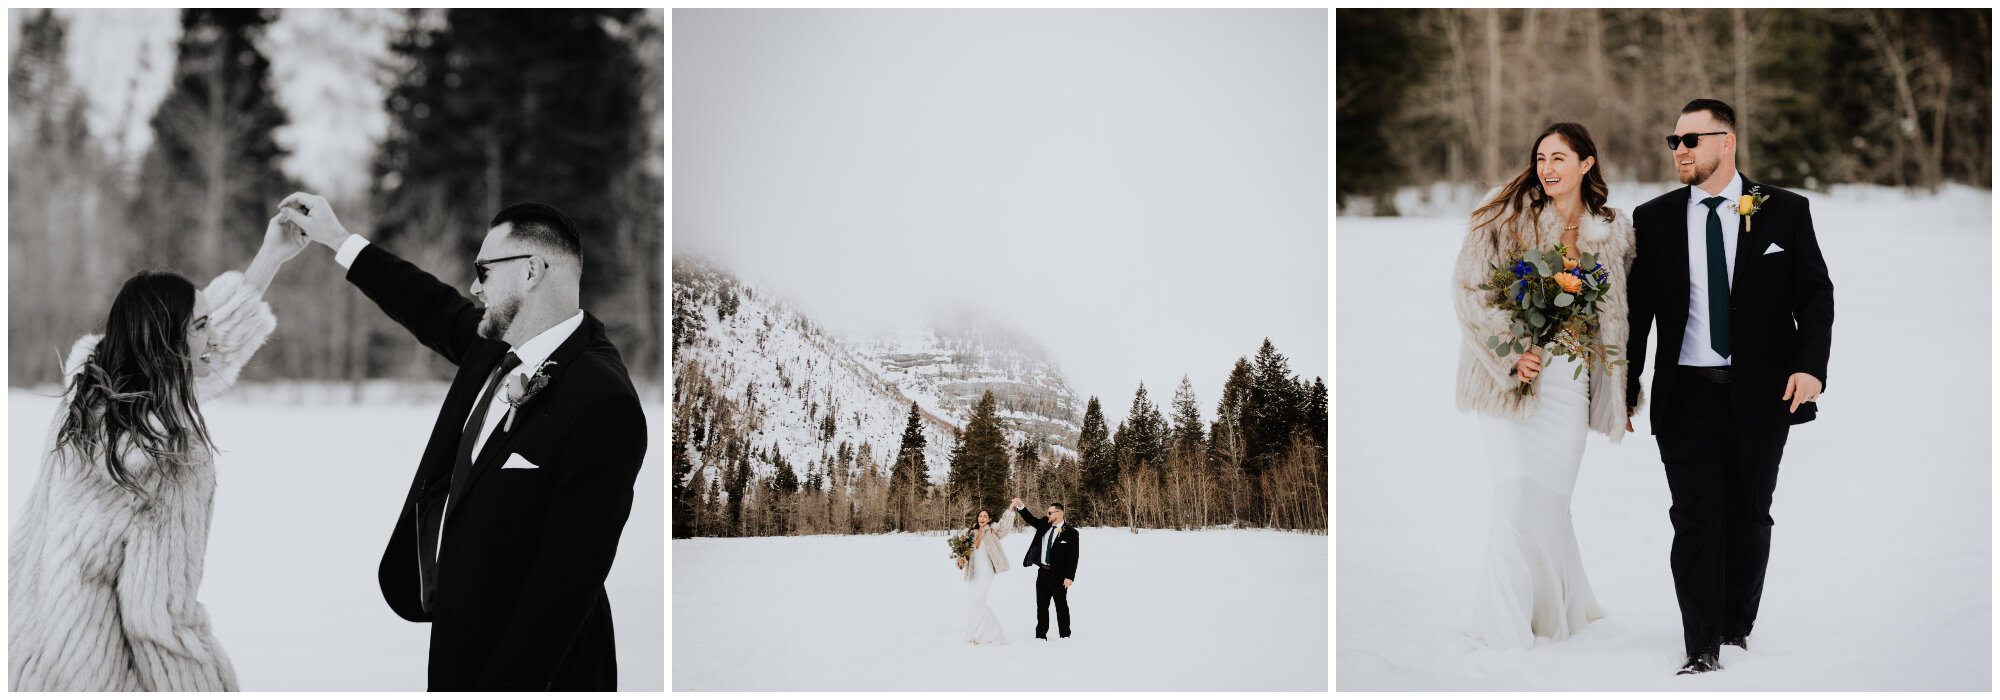 bride-groom-snow-dancing.jpg